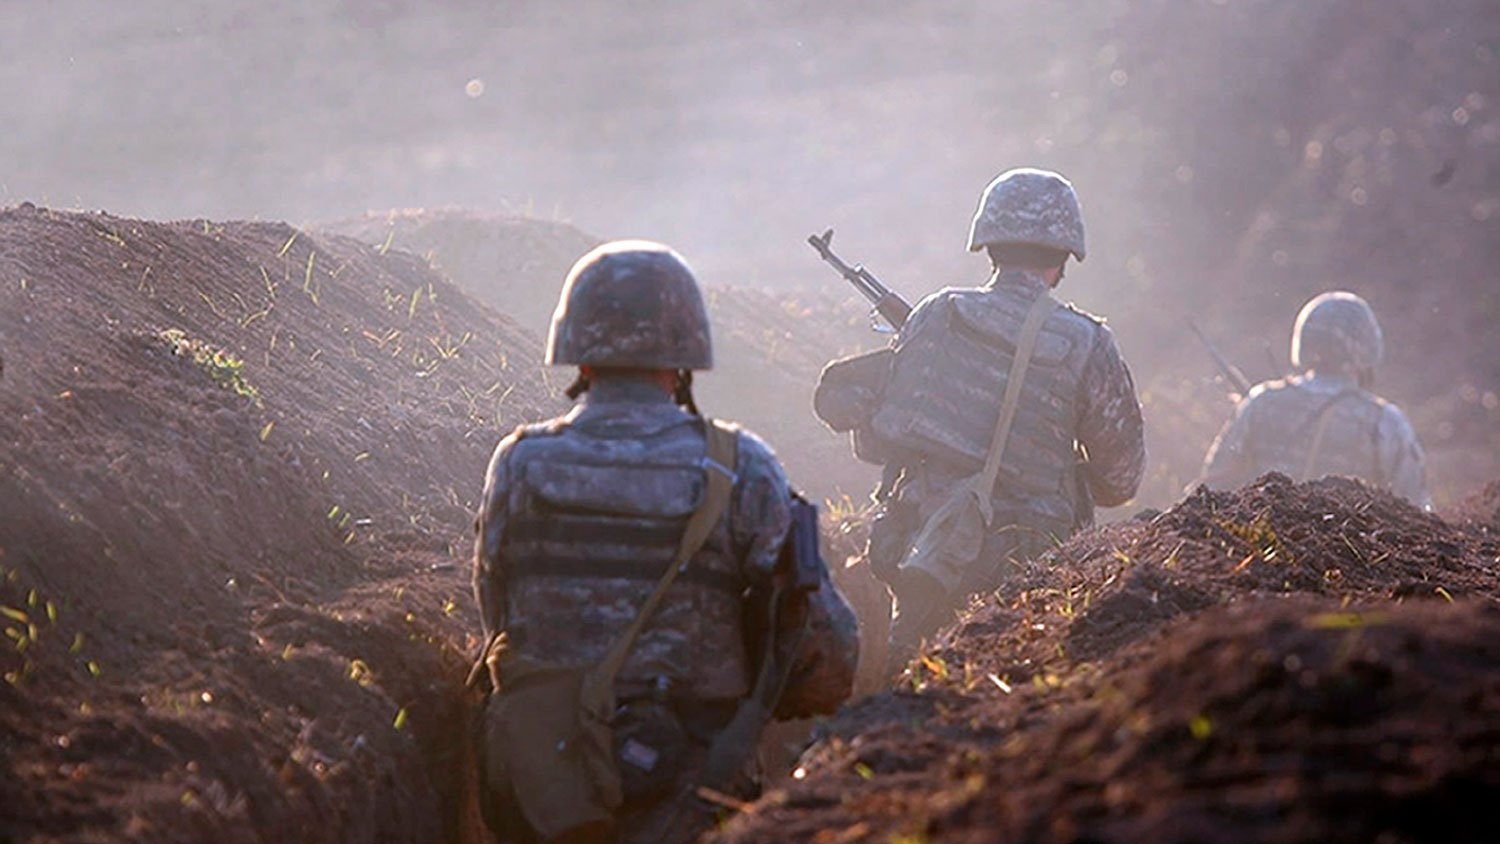 Ermənistan ordusu vacib yüksəklik və bir sıra mövqelərdən geri çəkildi - RƏSMİ